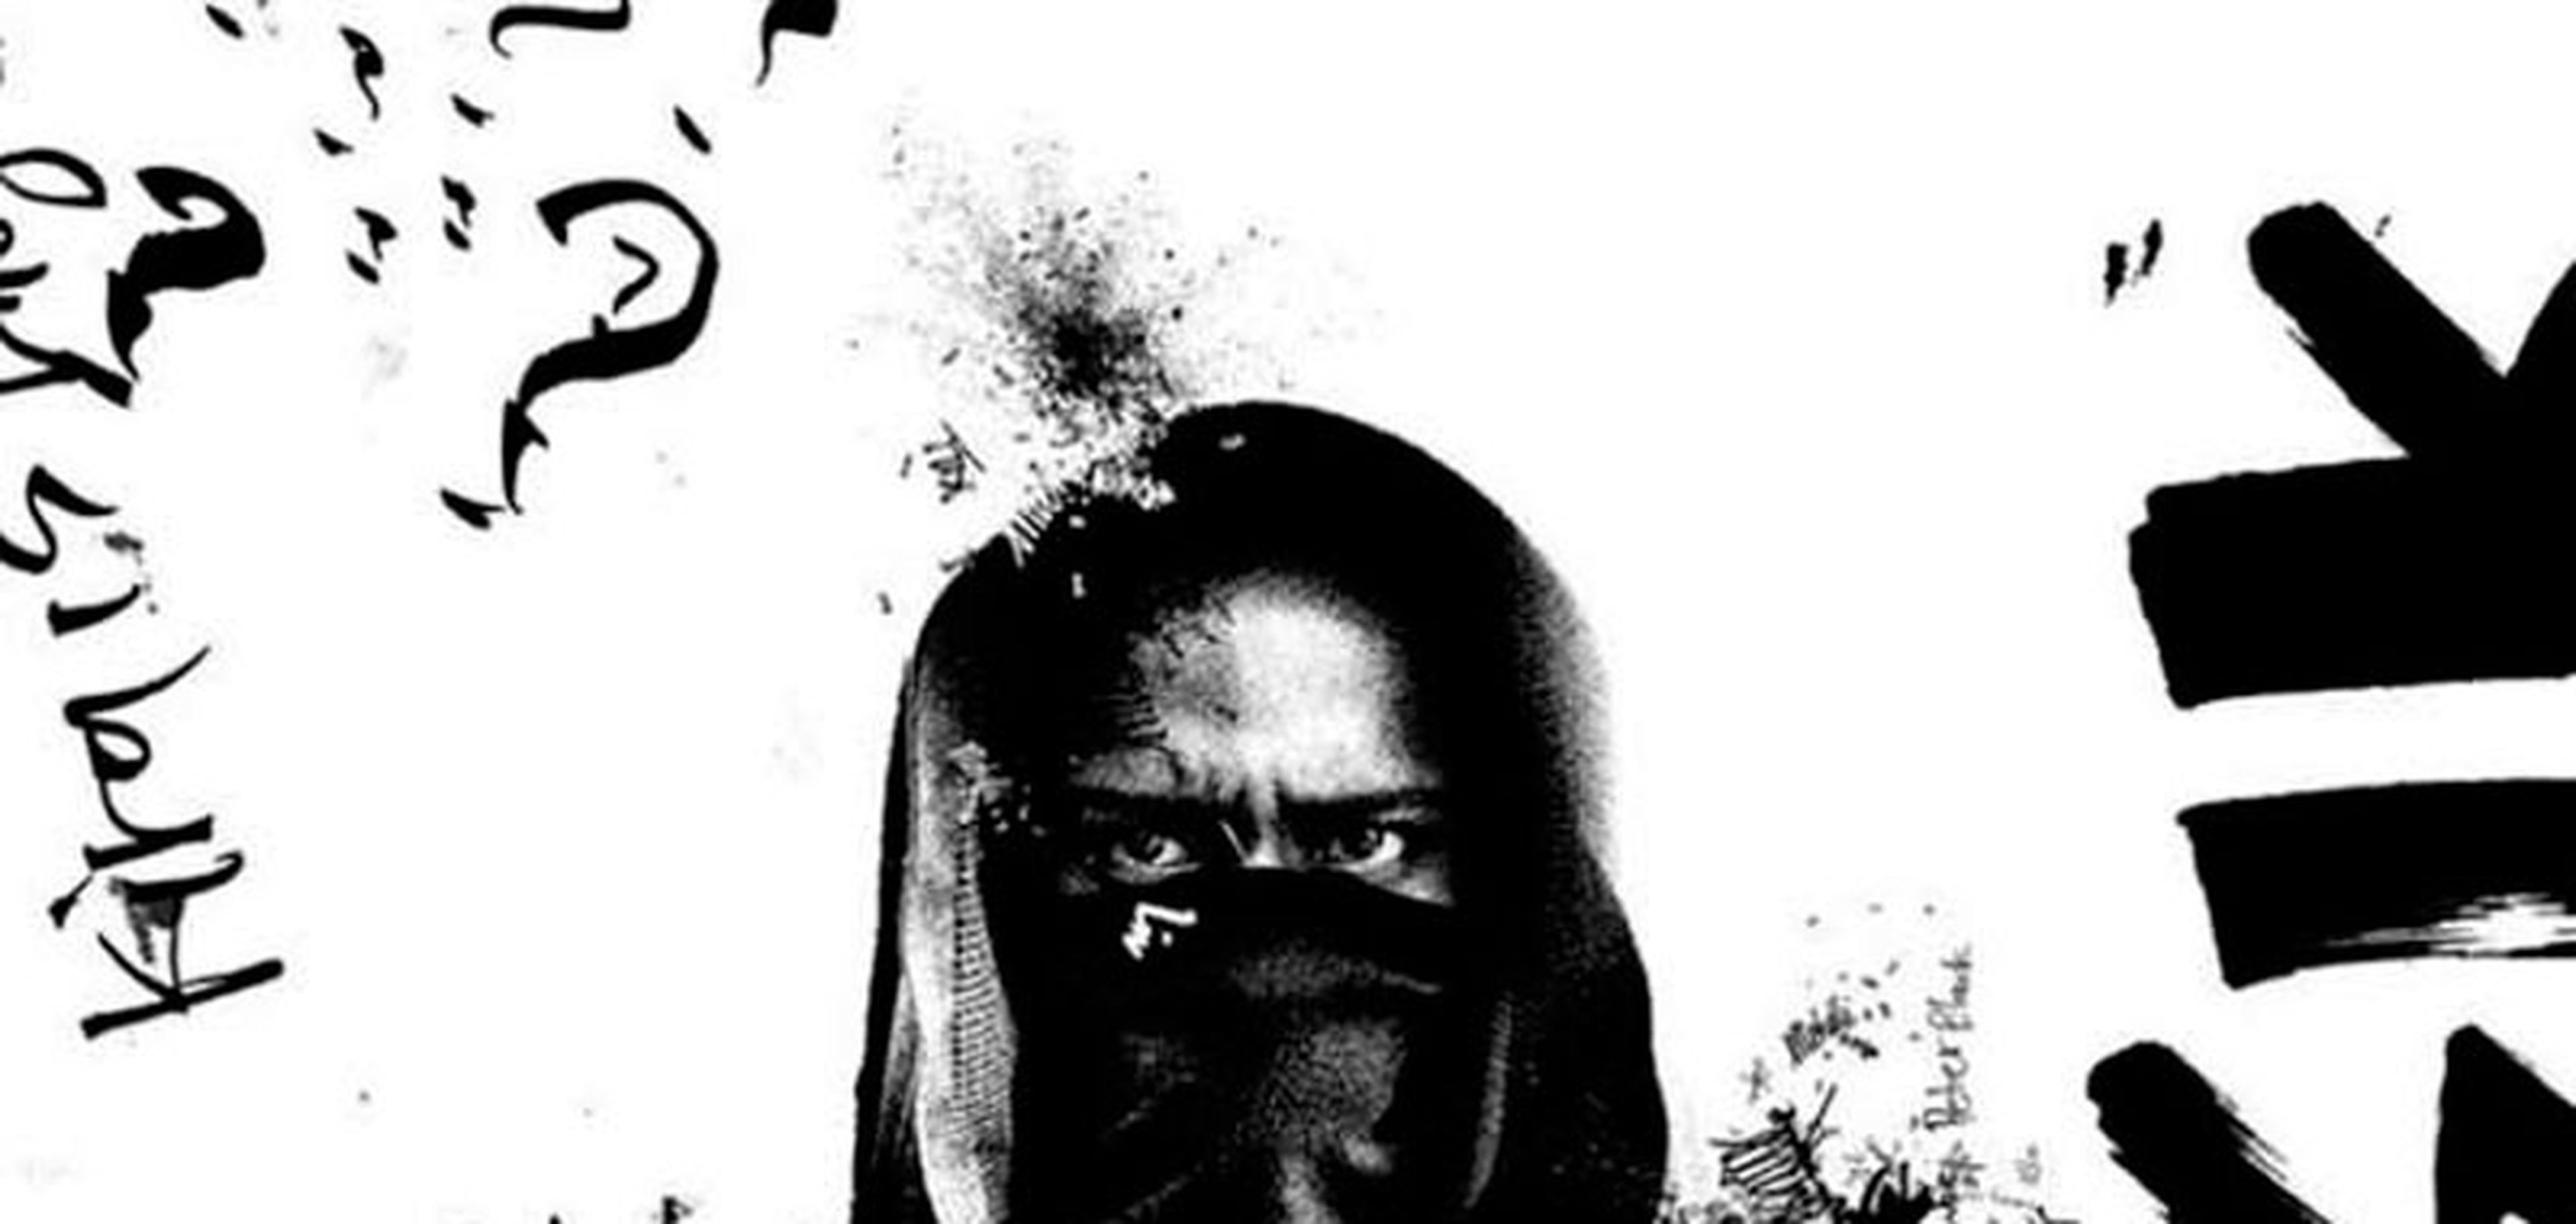 Death Note - L protagoniza el nuevo póster de la película de Netflix